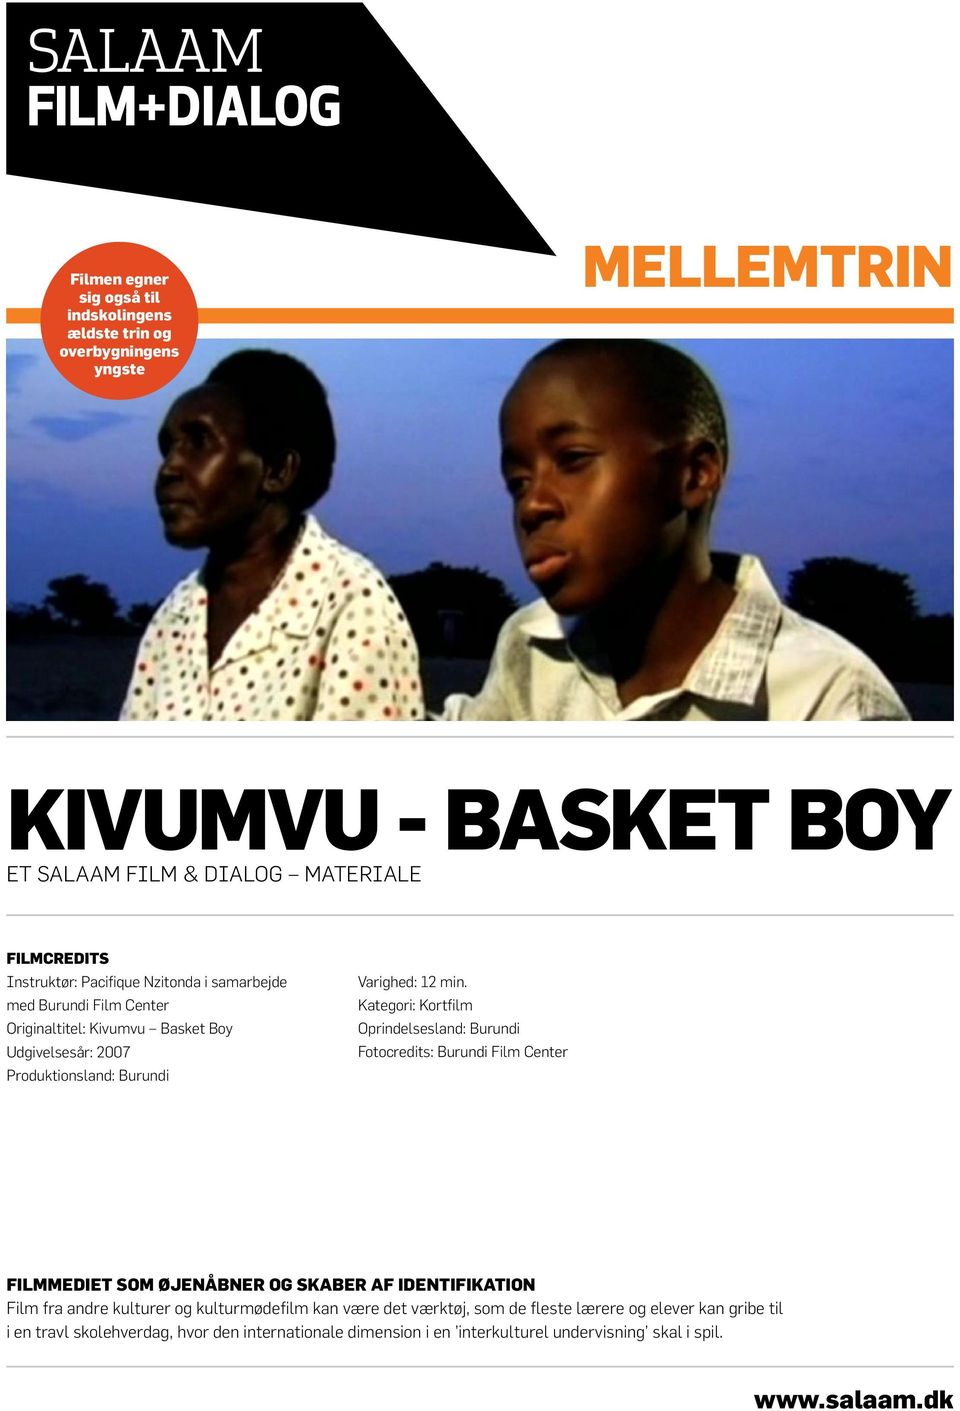 Kategori: Kortfilm Oprindelsesland: Burundi Fotocredits: Burundi Film Center Filmmediet som øjenåbner og skaber af identifikation Film fra andre kulturer og